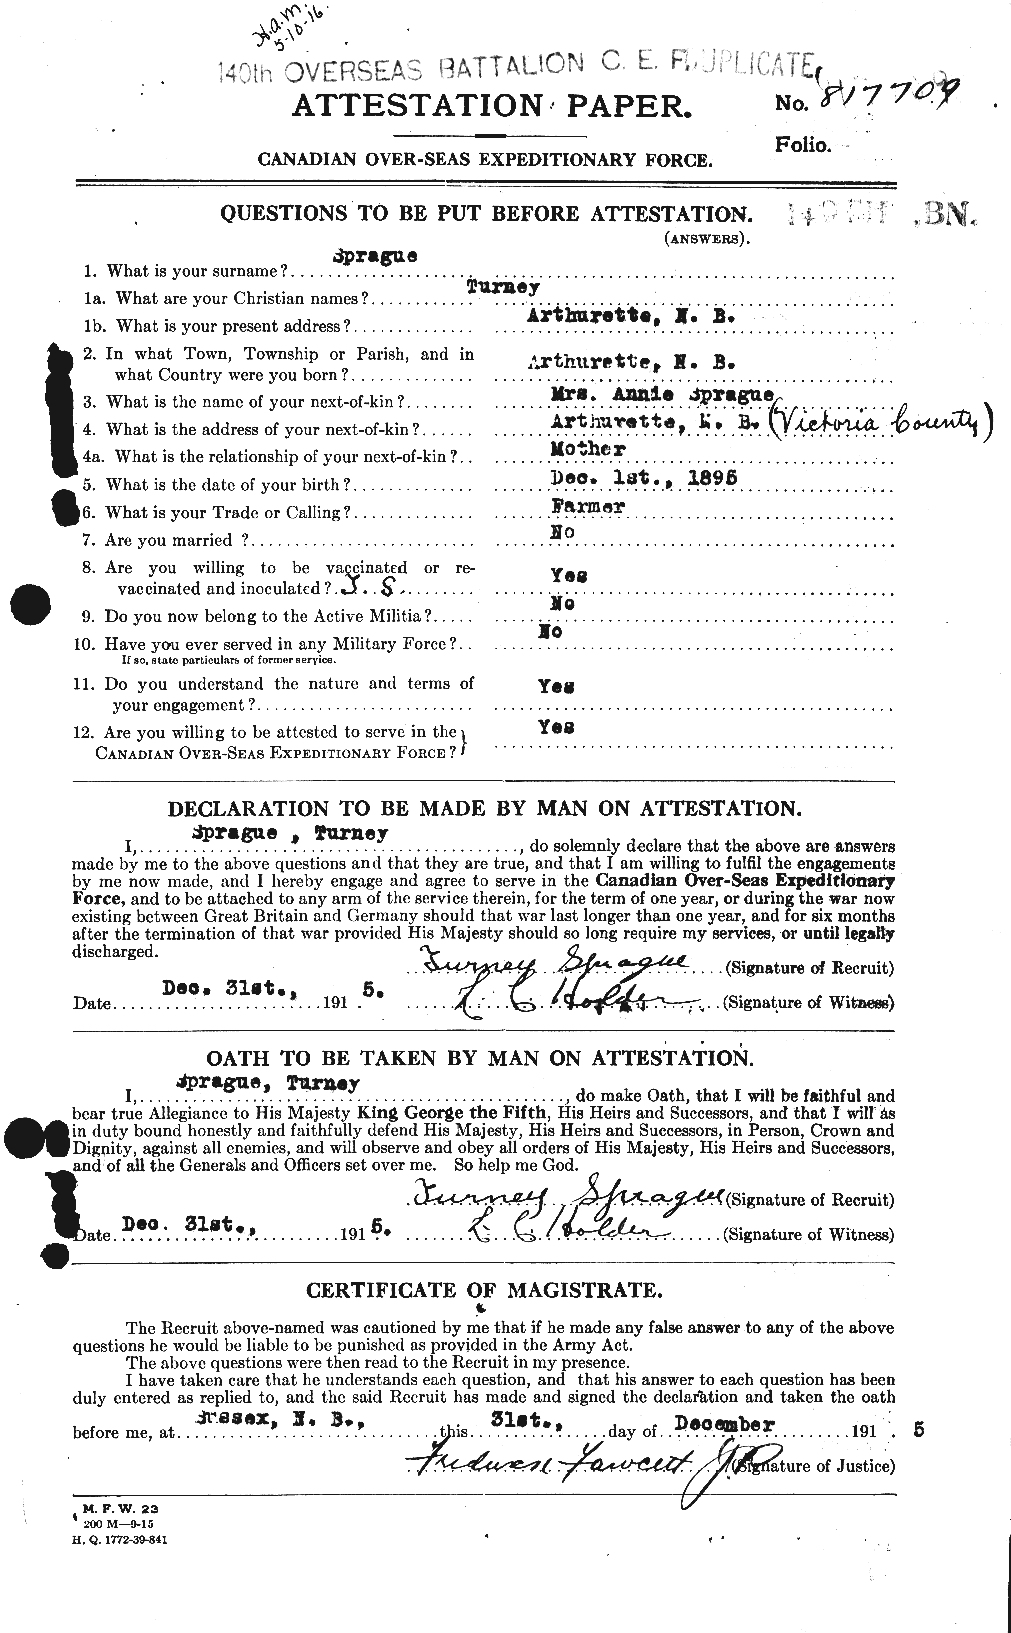 Dossiers du Personnel de la Première Guerre mondiale - CEC 112524a